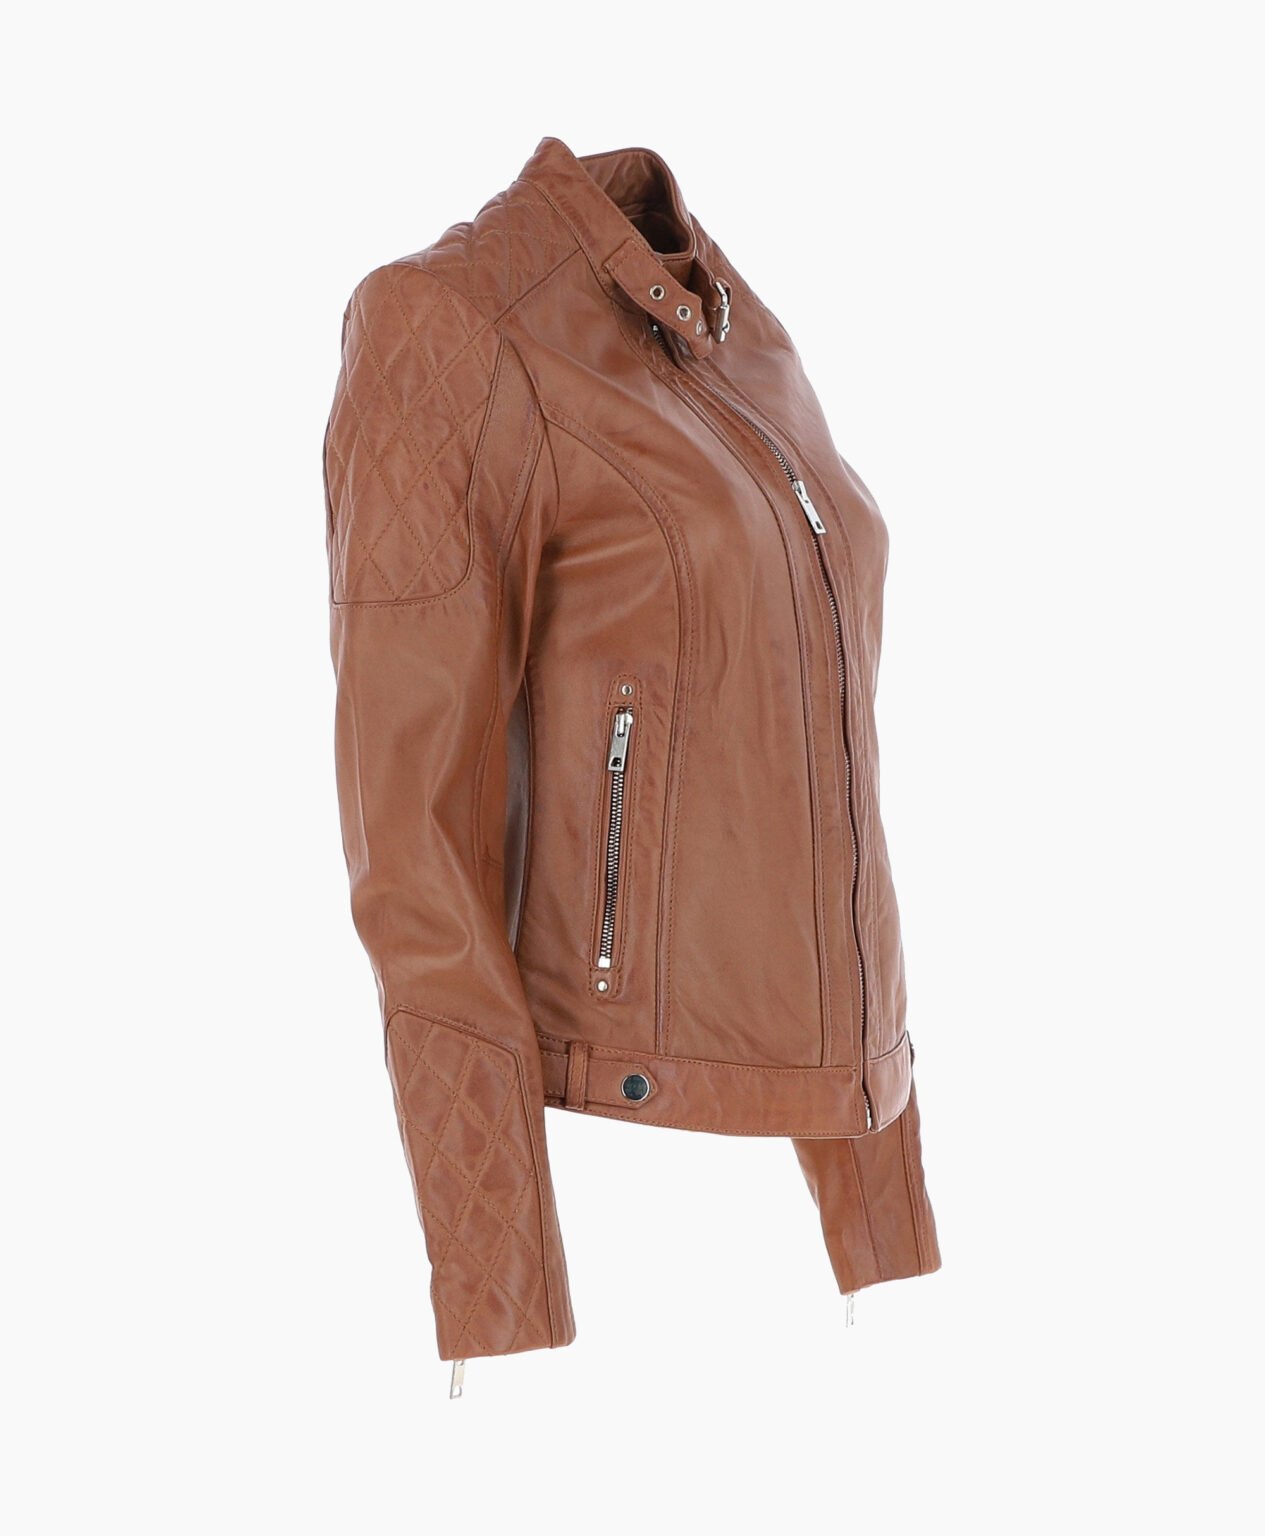 vogue-jacket-leather-jacket-tan-malibu-image203